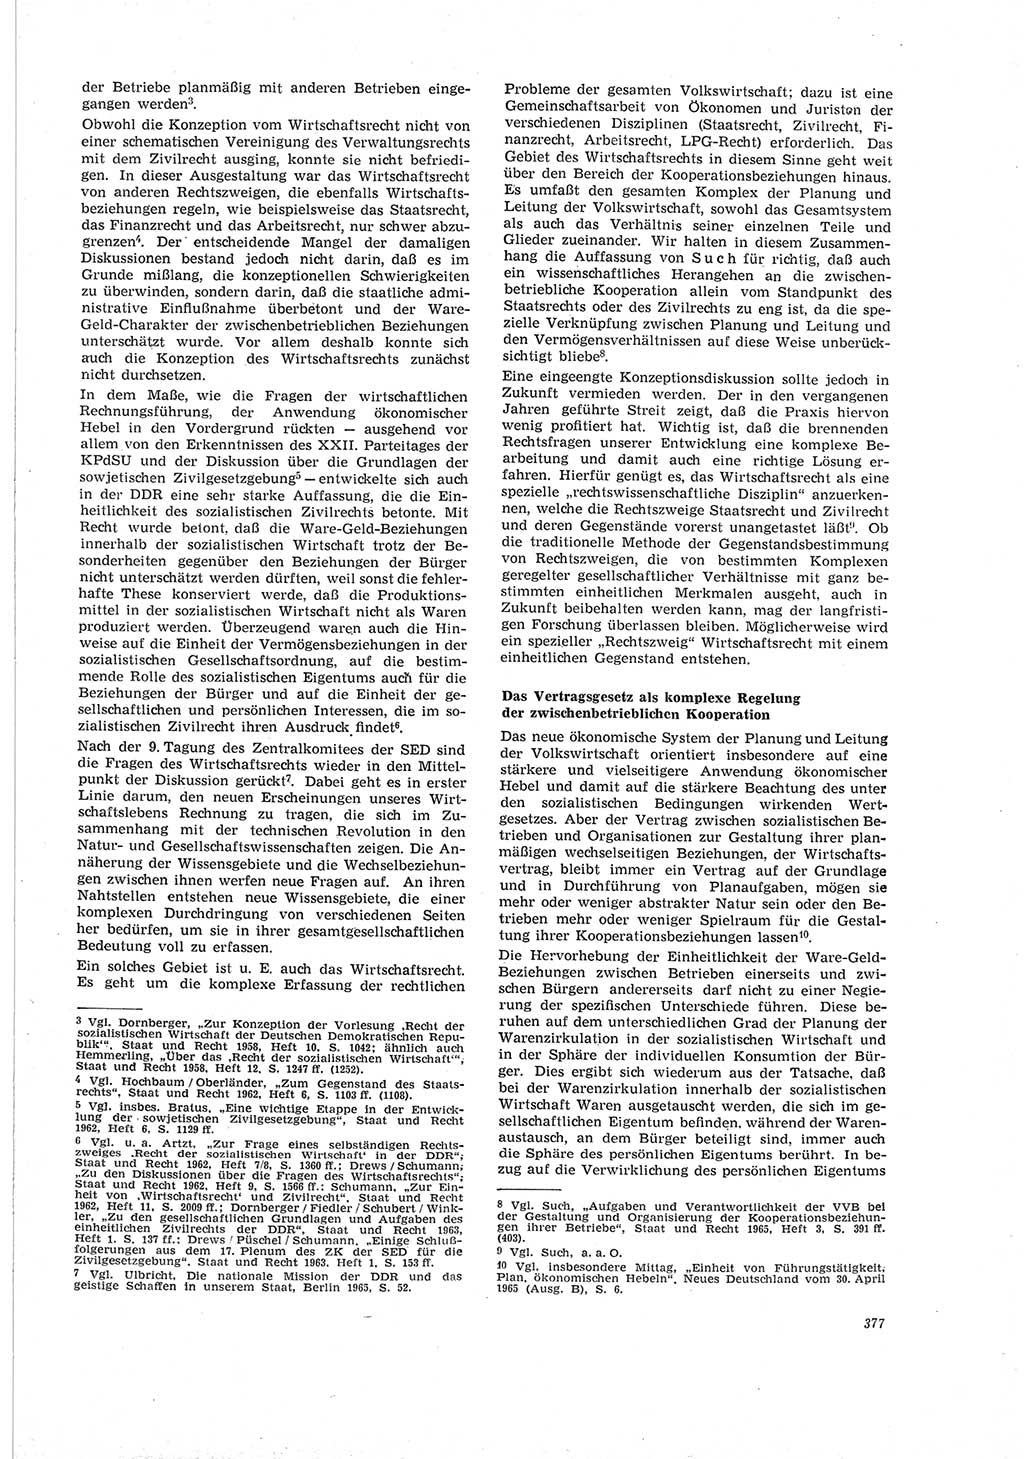 Neue Justiz (NJ), Zeitschrift für Recht und Rechtswissenschaft [Deutsche Demokratische Republik (DDR)], 19. Jahrgang 1965, Seite 377 (NJ DDR 1965, S. 377)